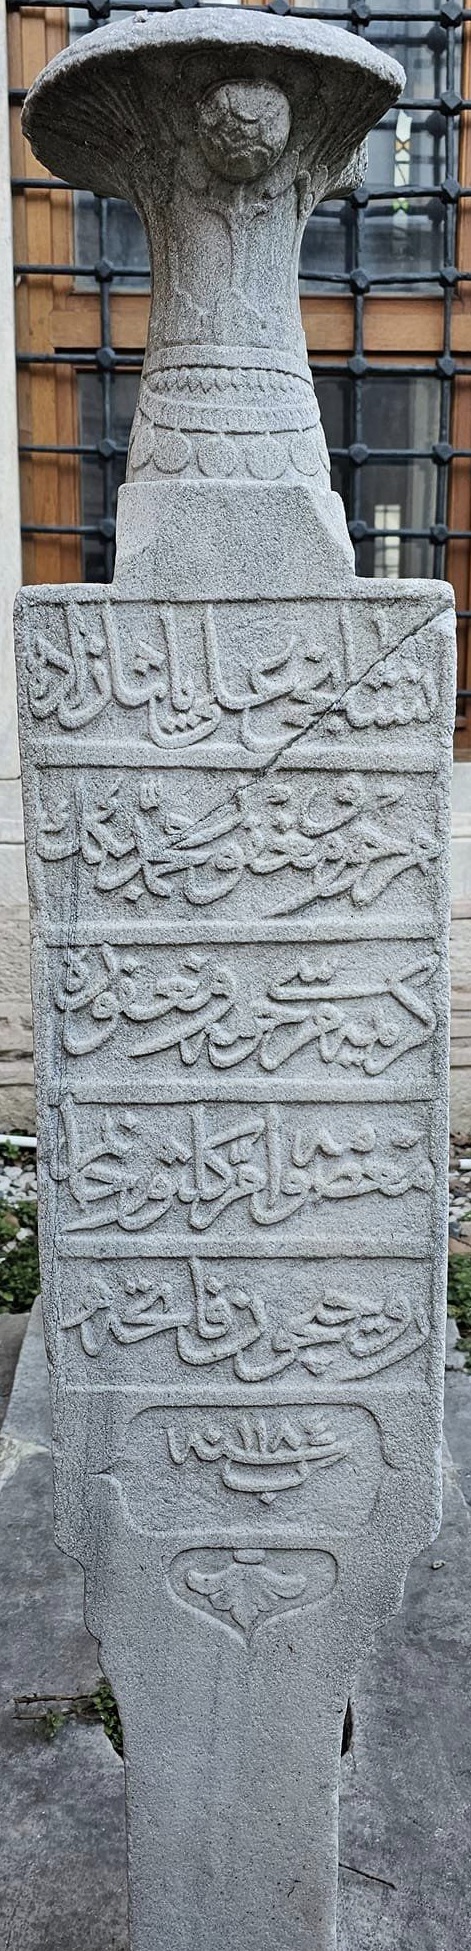 Ümmü Gülsüm hanımın Osmanlıca mezar taşı